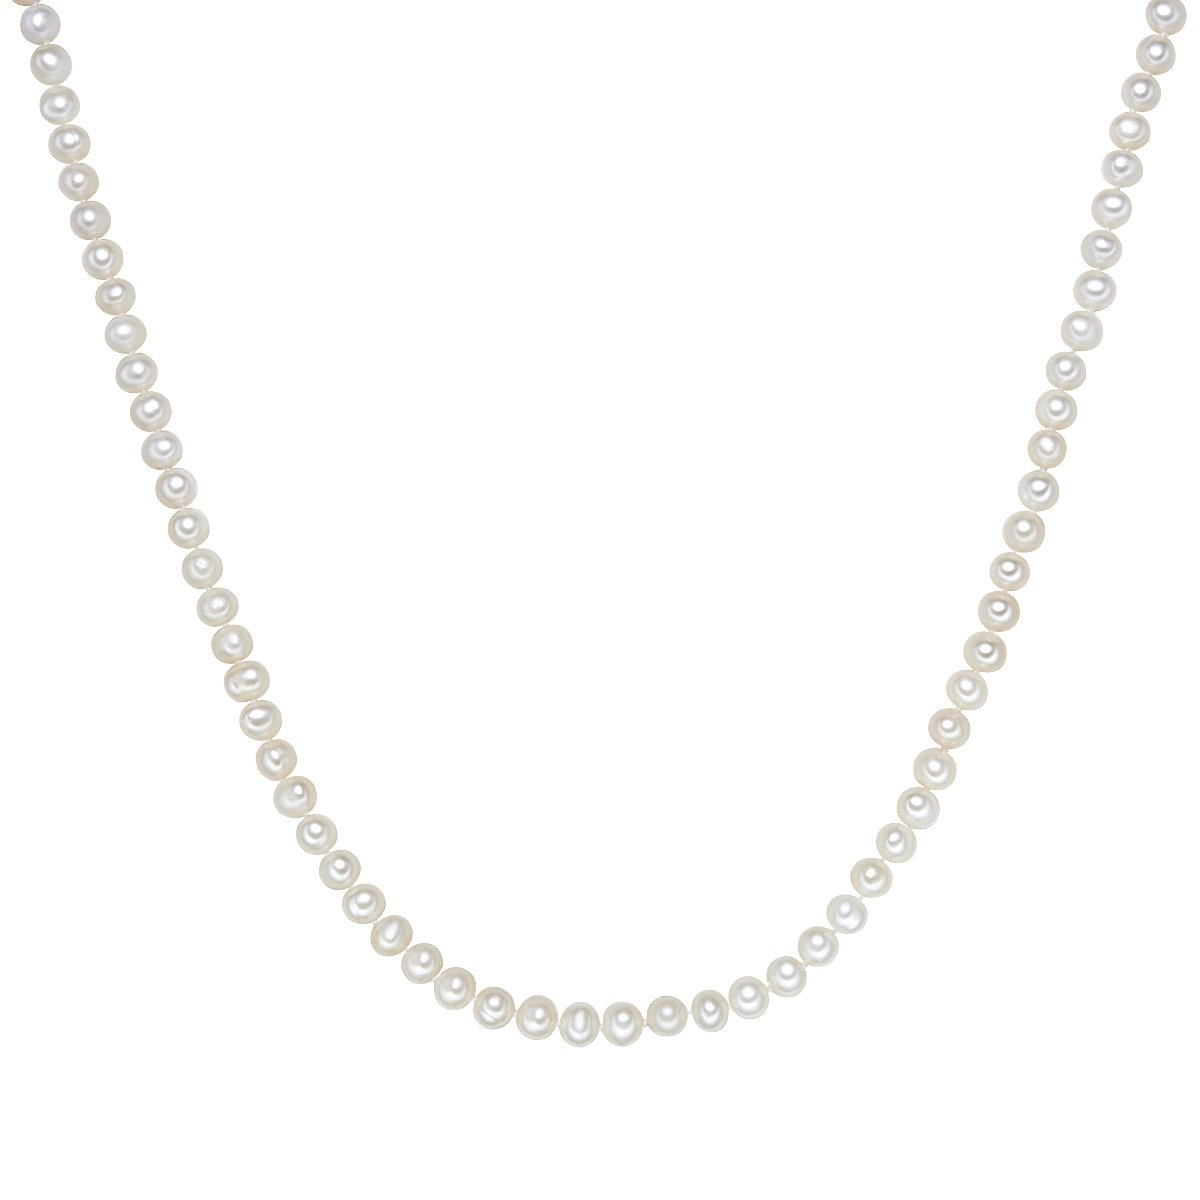 Valero Pearls Damen-Kette Hochwertige Süßwasser-Zuchtperlen in ca. 6 mm Oval weiß 90 cm - Perlenkette Halskette mit echten Perlen 340200